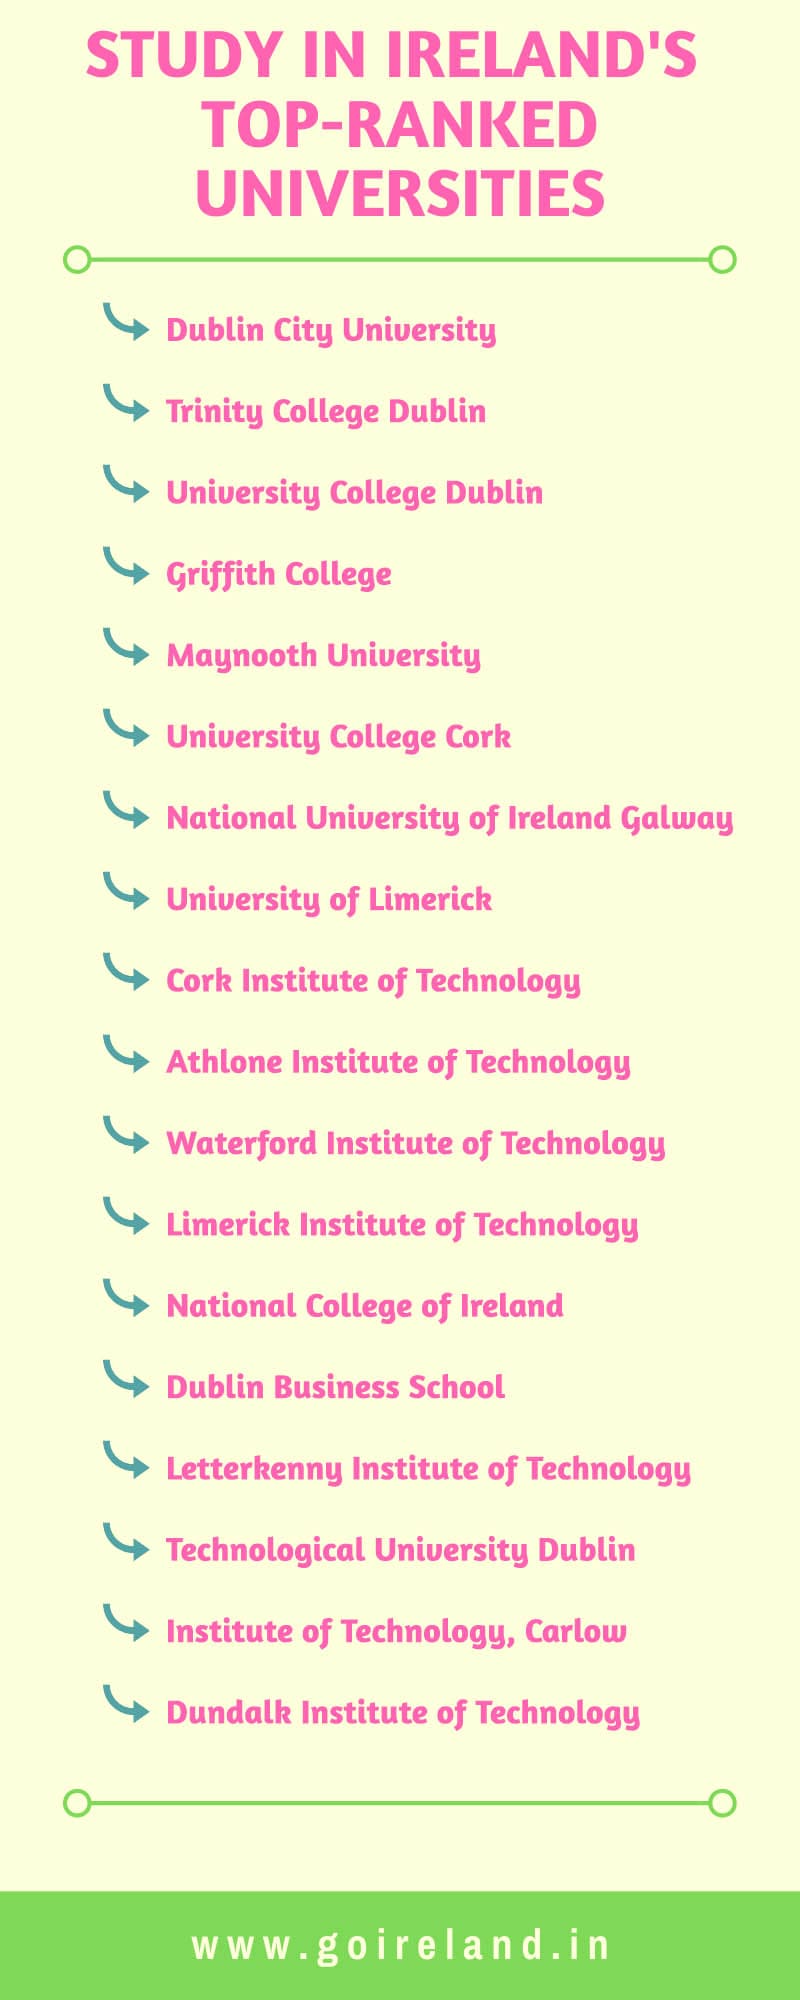 Study in Ireland's Top-Ranked Universities